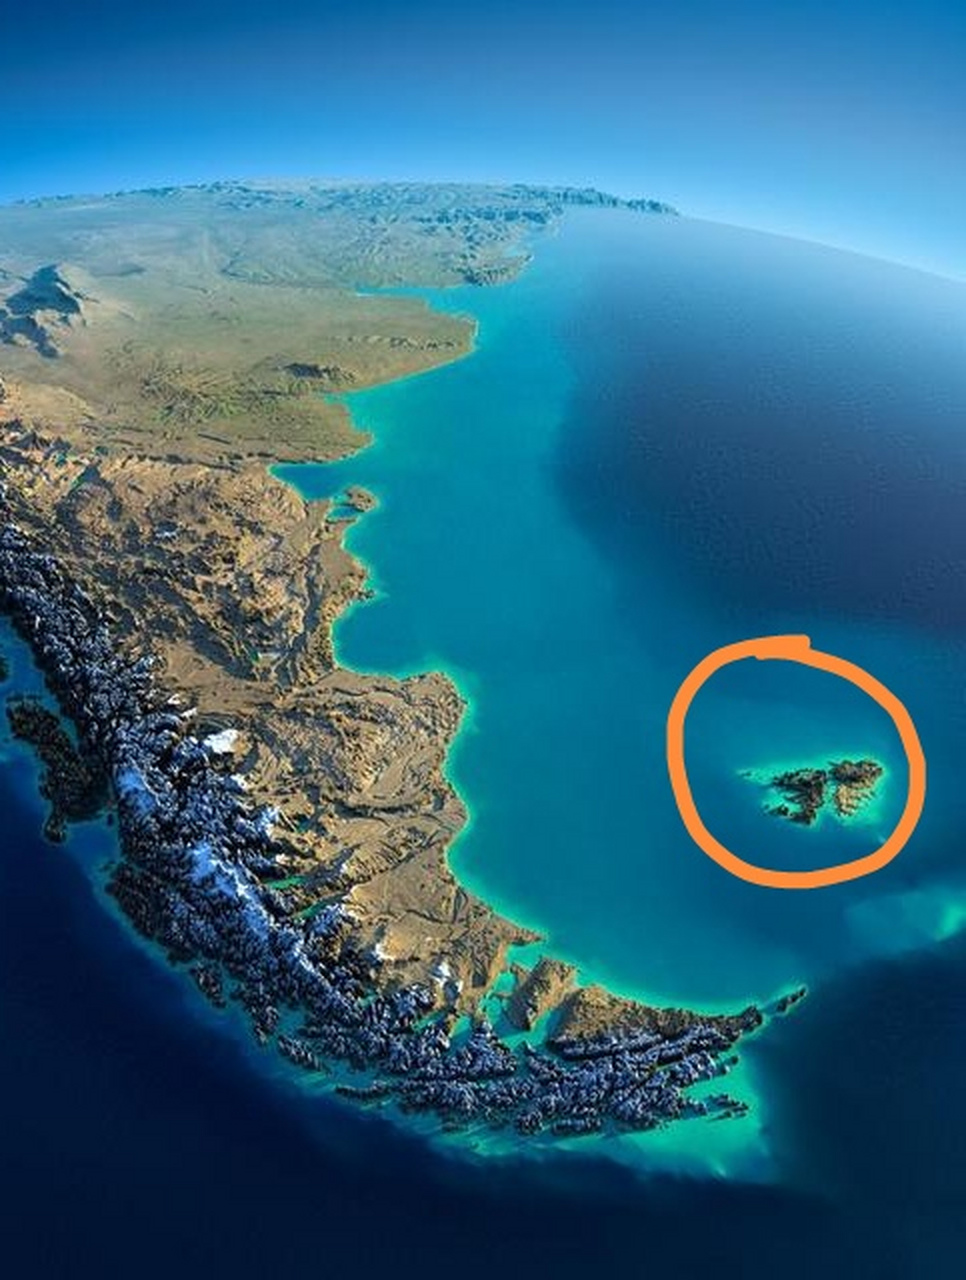 马岛并不小,面积122万平方公里,是北方四岛的两倍还多